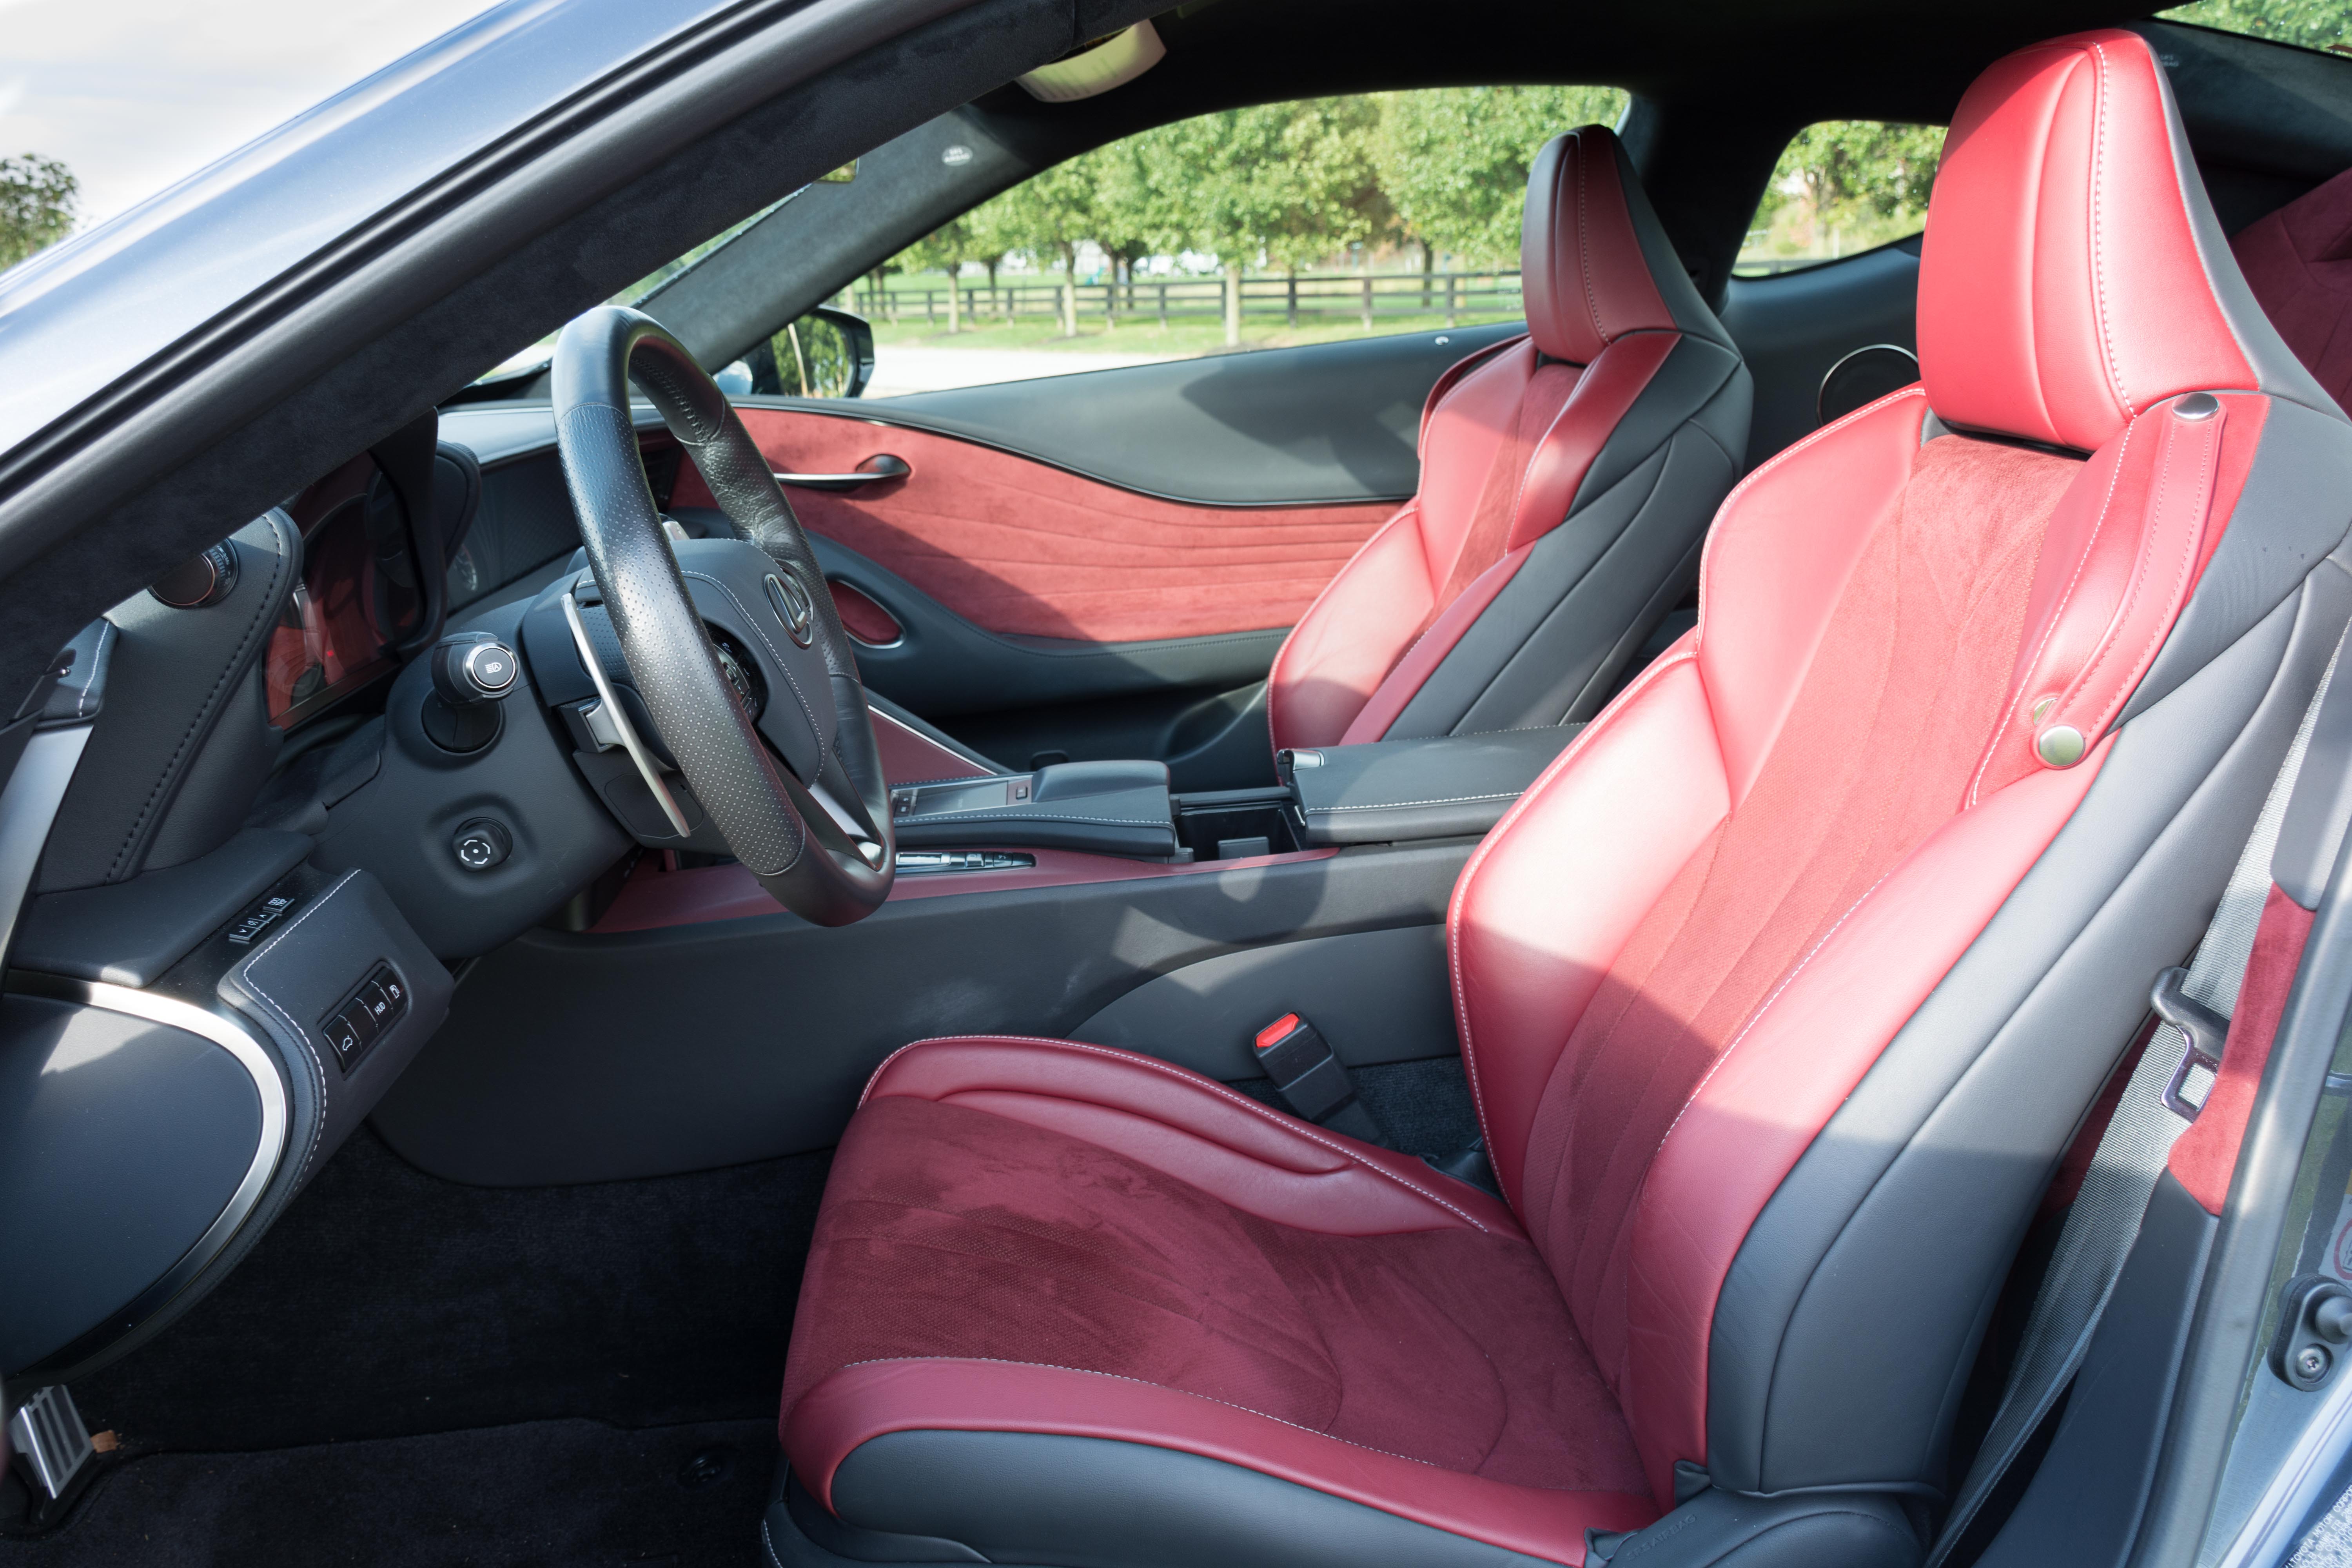 Lexus LC 500 interior model